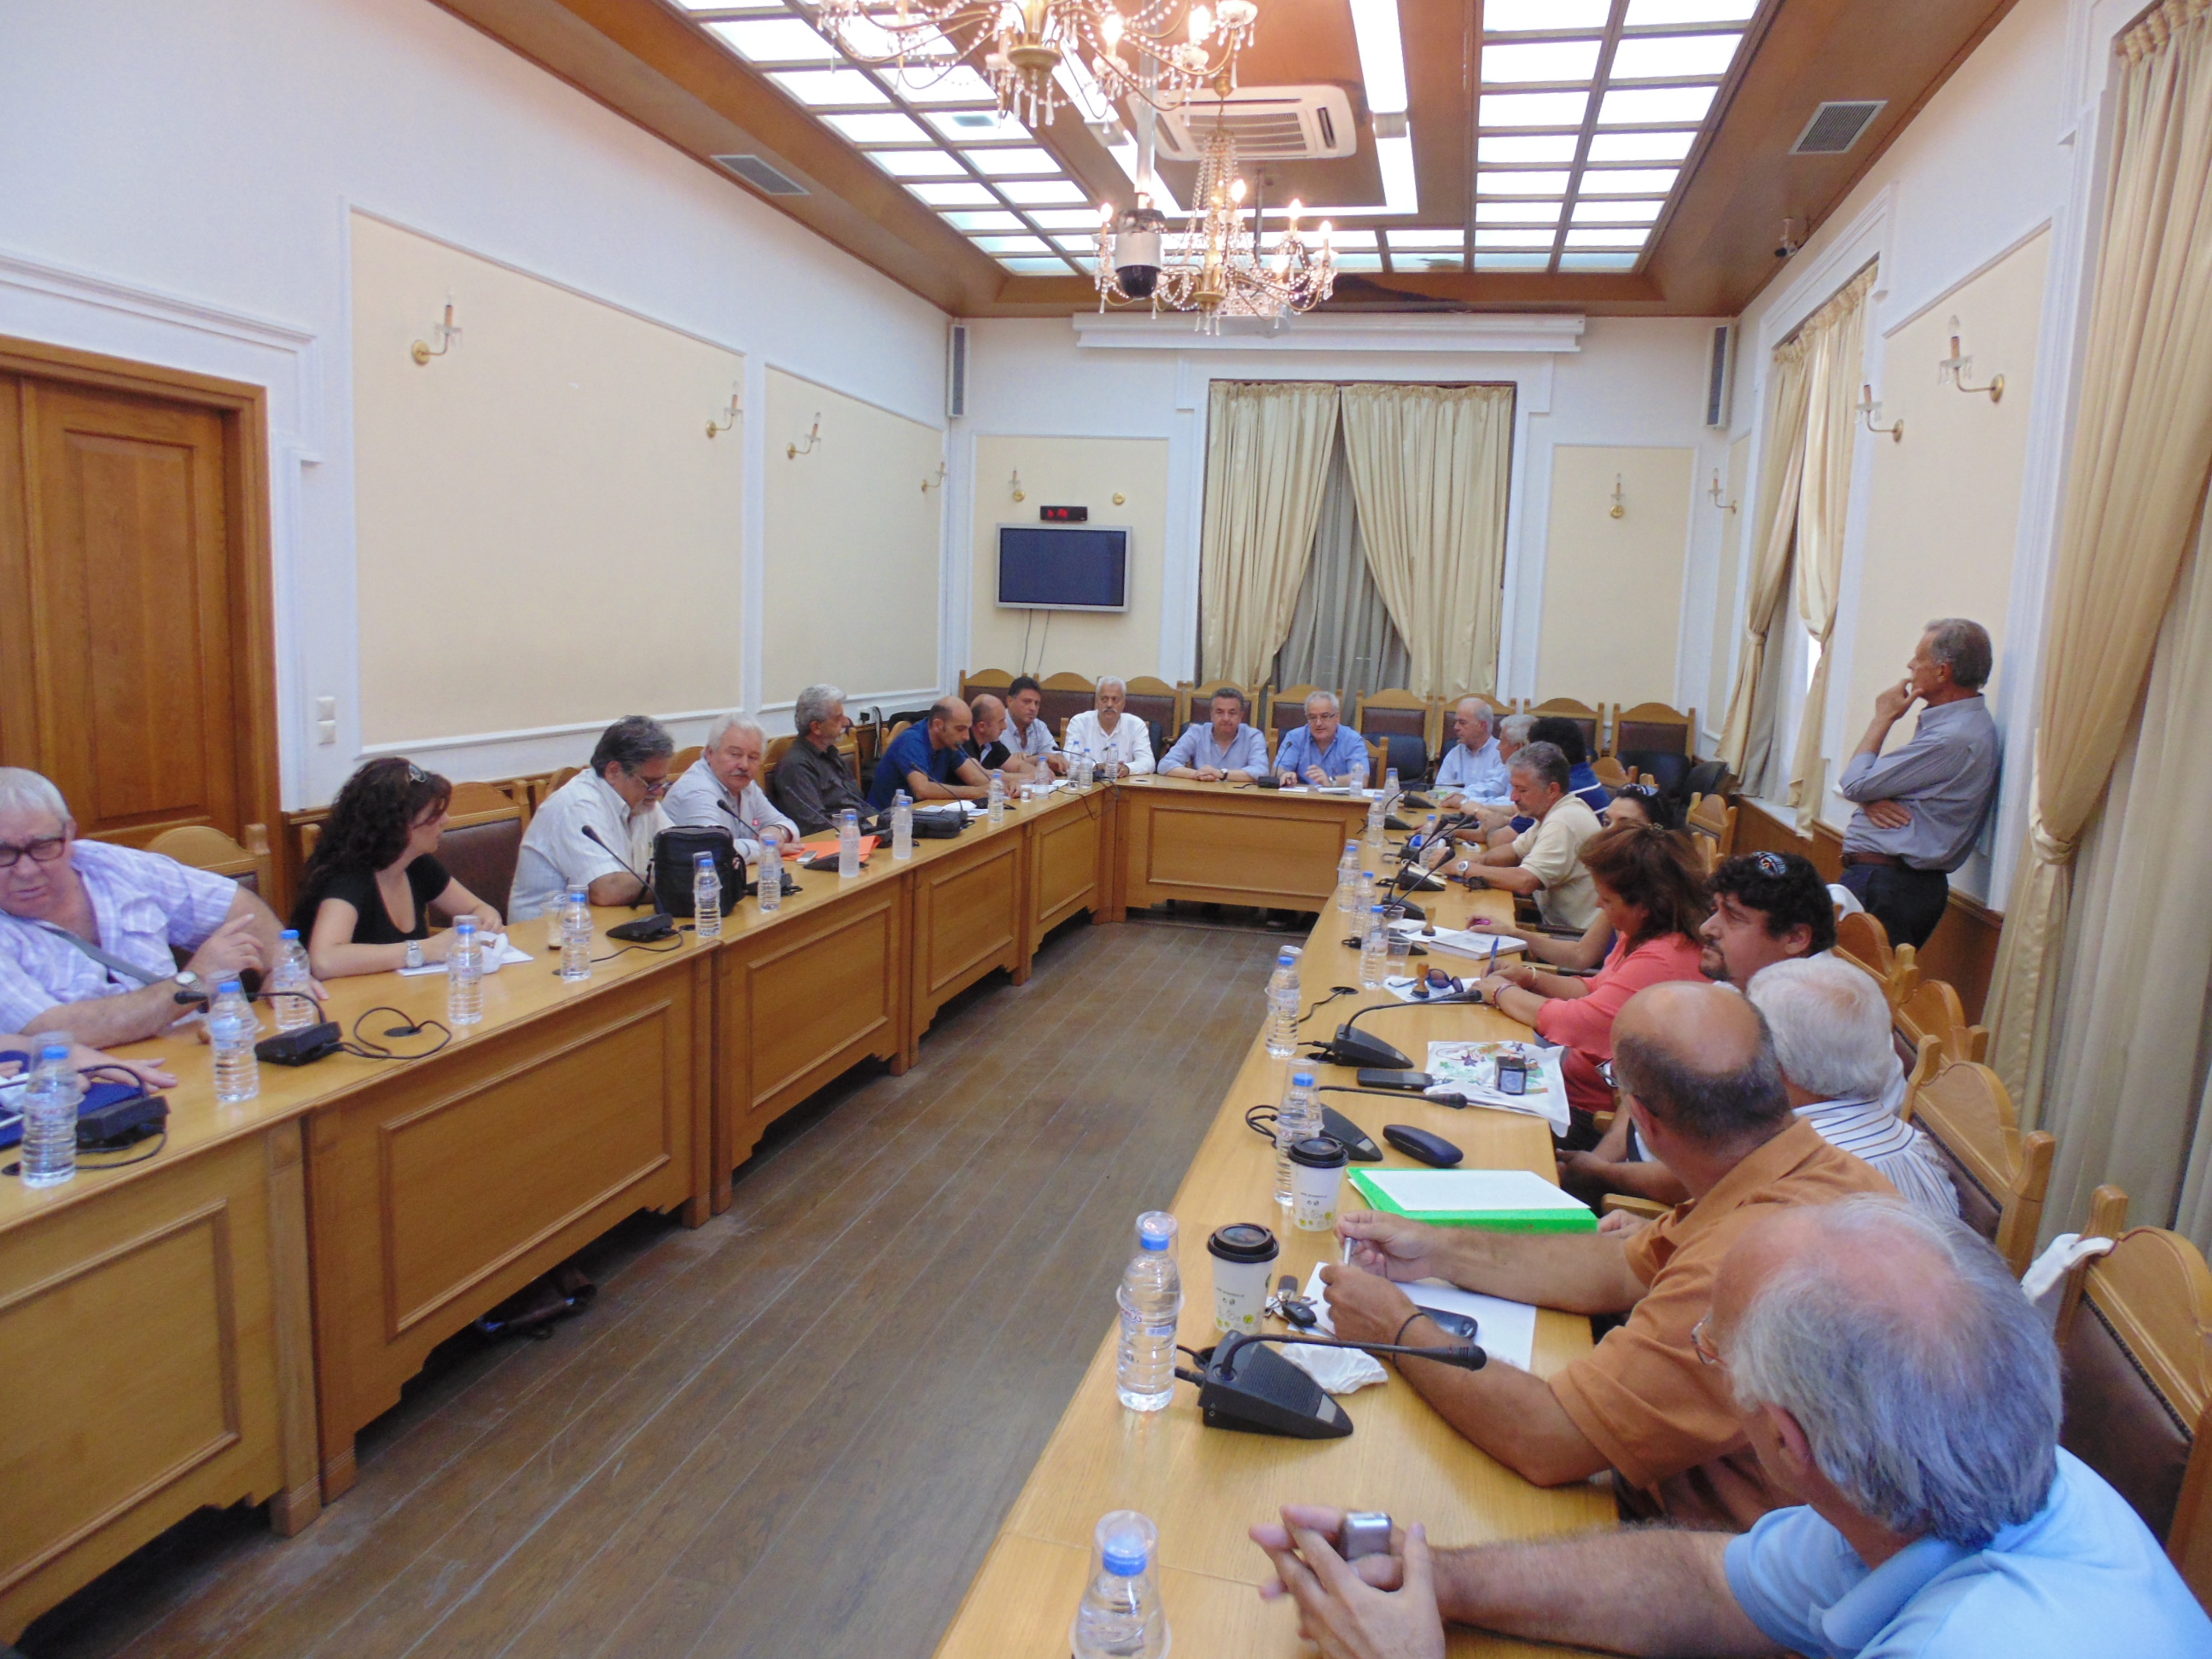 Πρωτόκολλο Συνεργασίας μεταξύ Περιφέρειας Κρήτης, Εκκλησίας Κρήτης, δημάρχους του νησιού, και συμμετέχοντες κοινωνικούς φορείς  για την αντιμετώπιση της φτώχειας